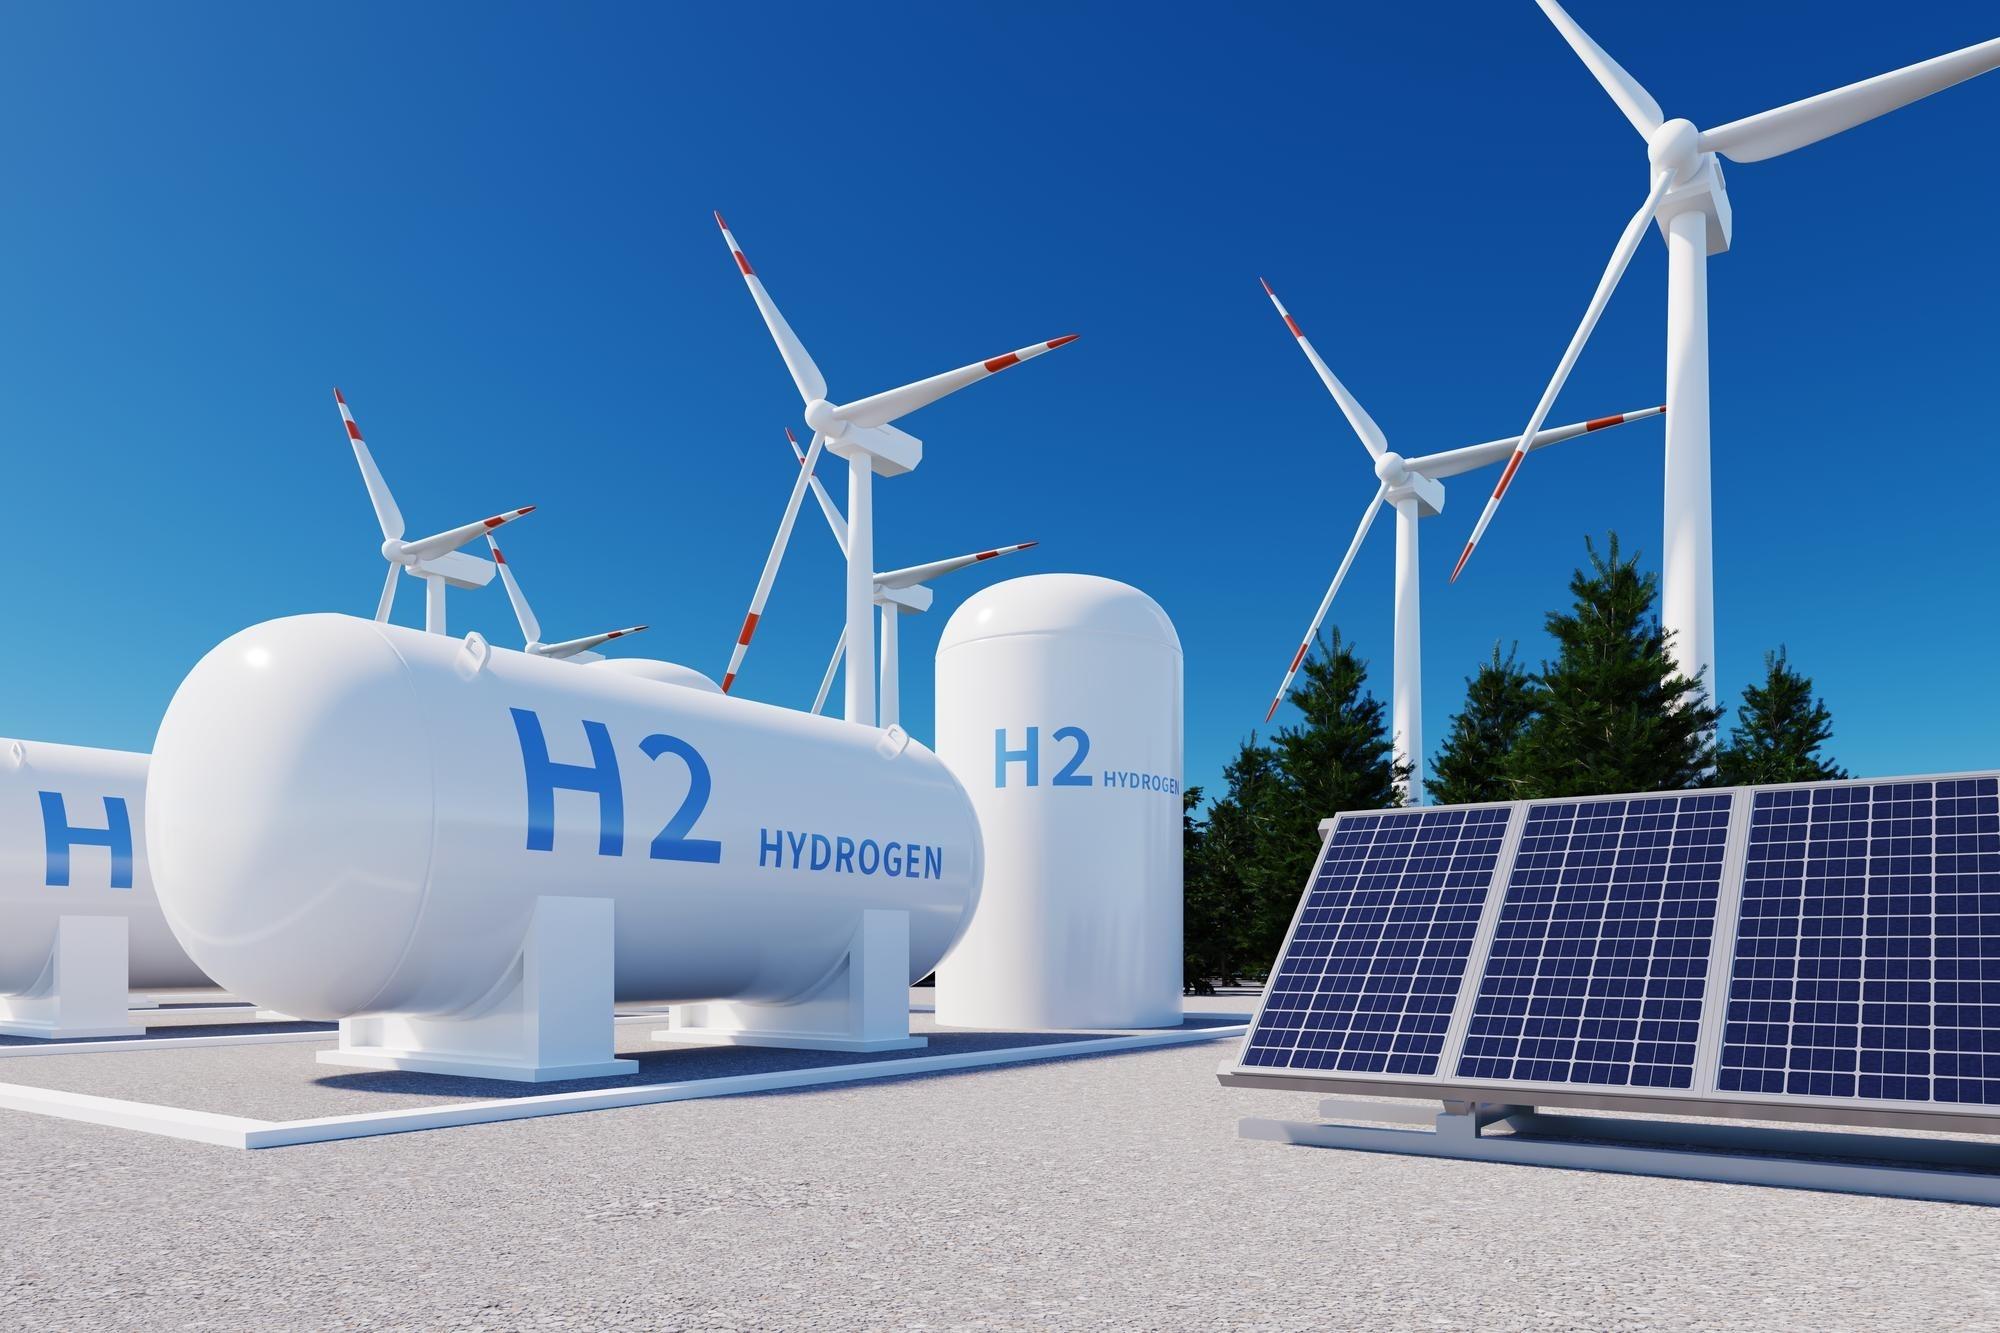 El hidrógeno tendrá un marco regulatorio propio en la UE